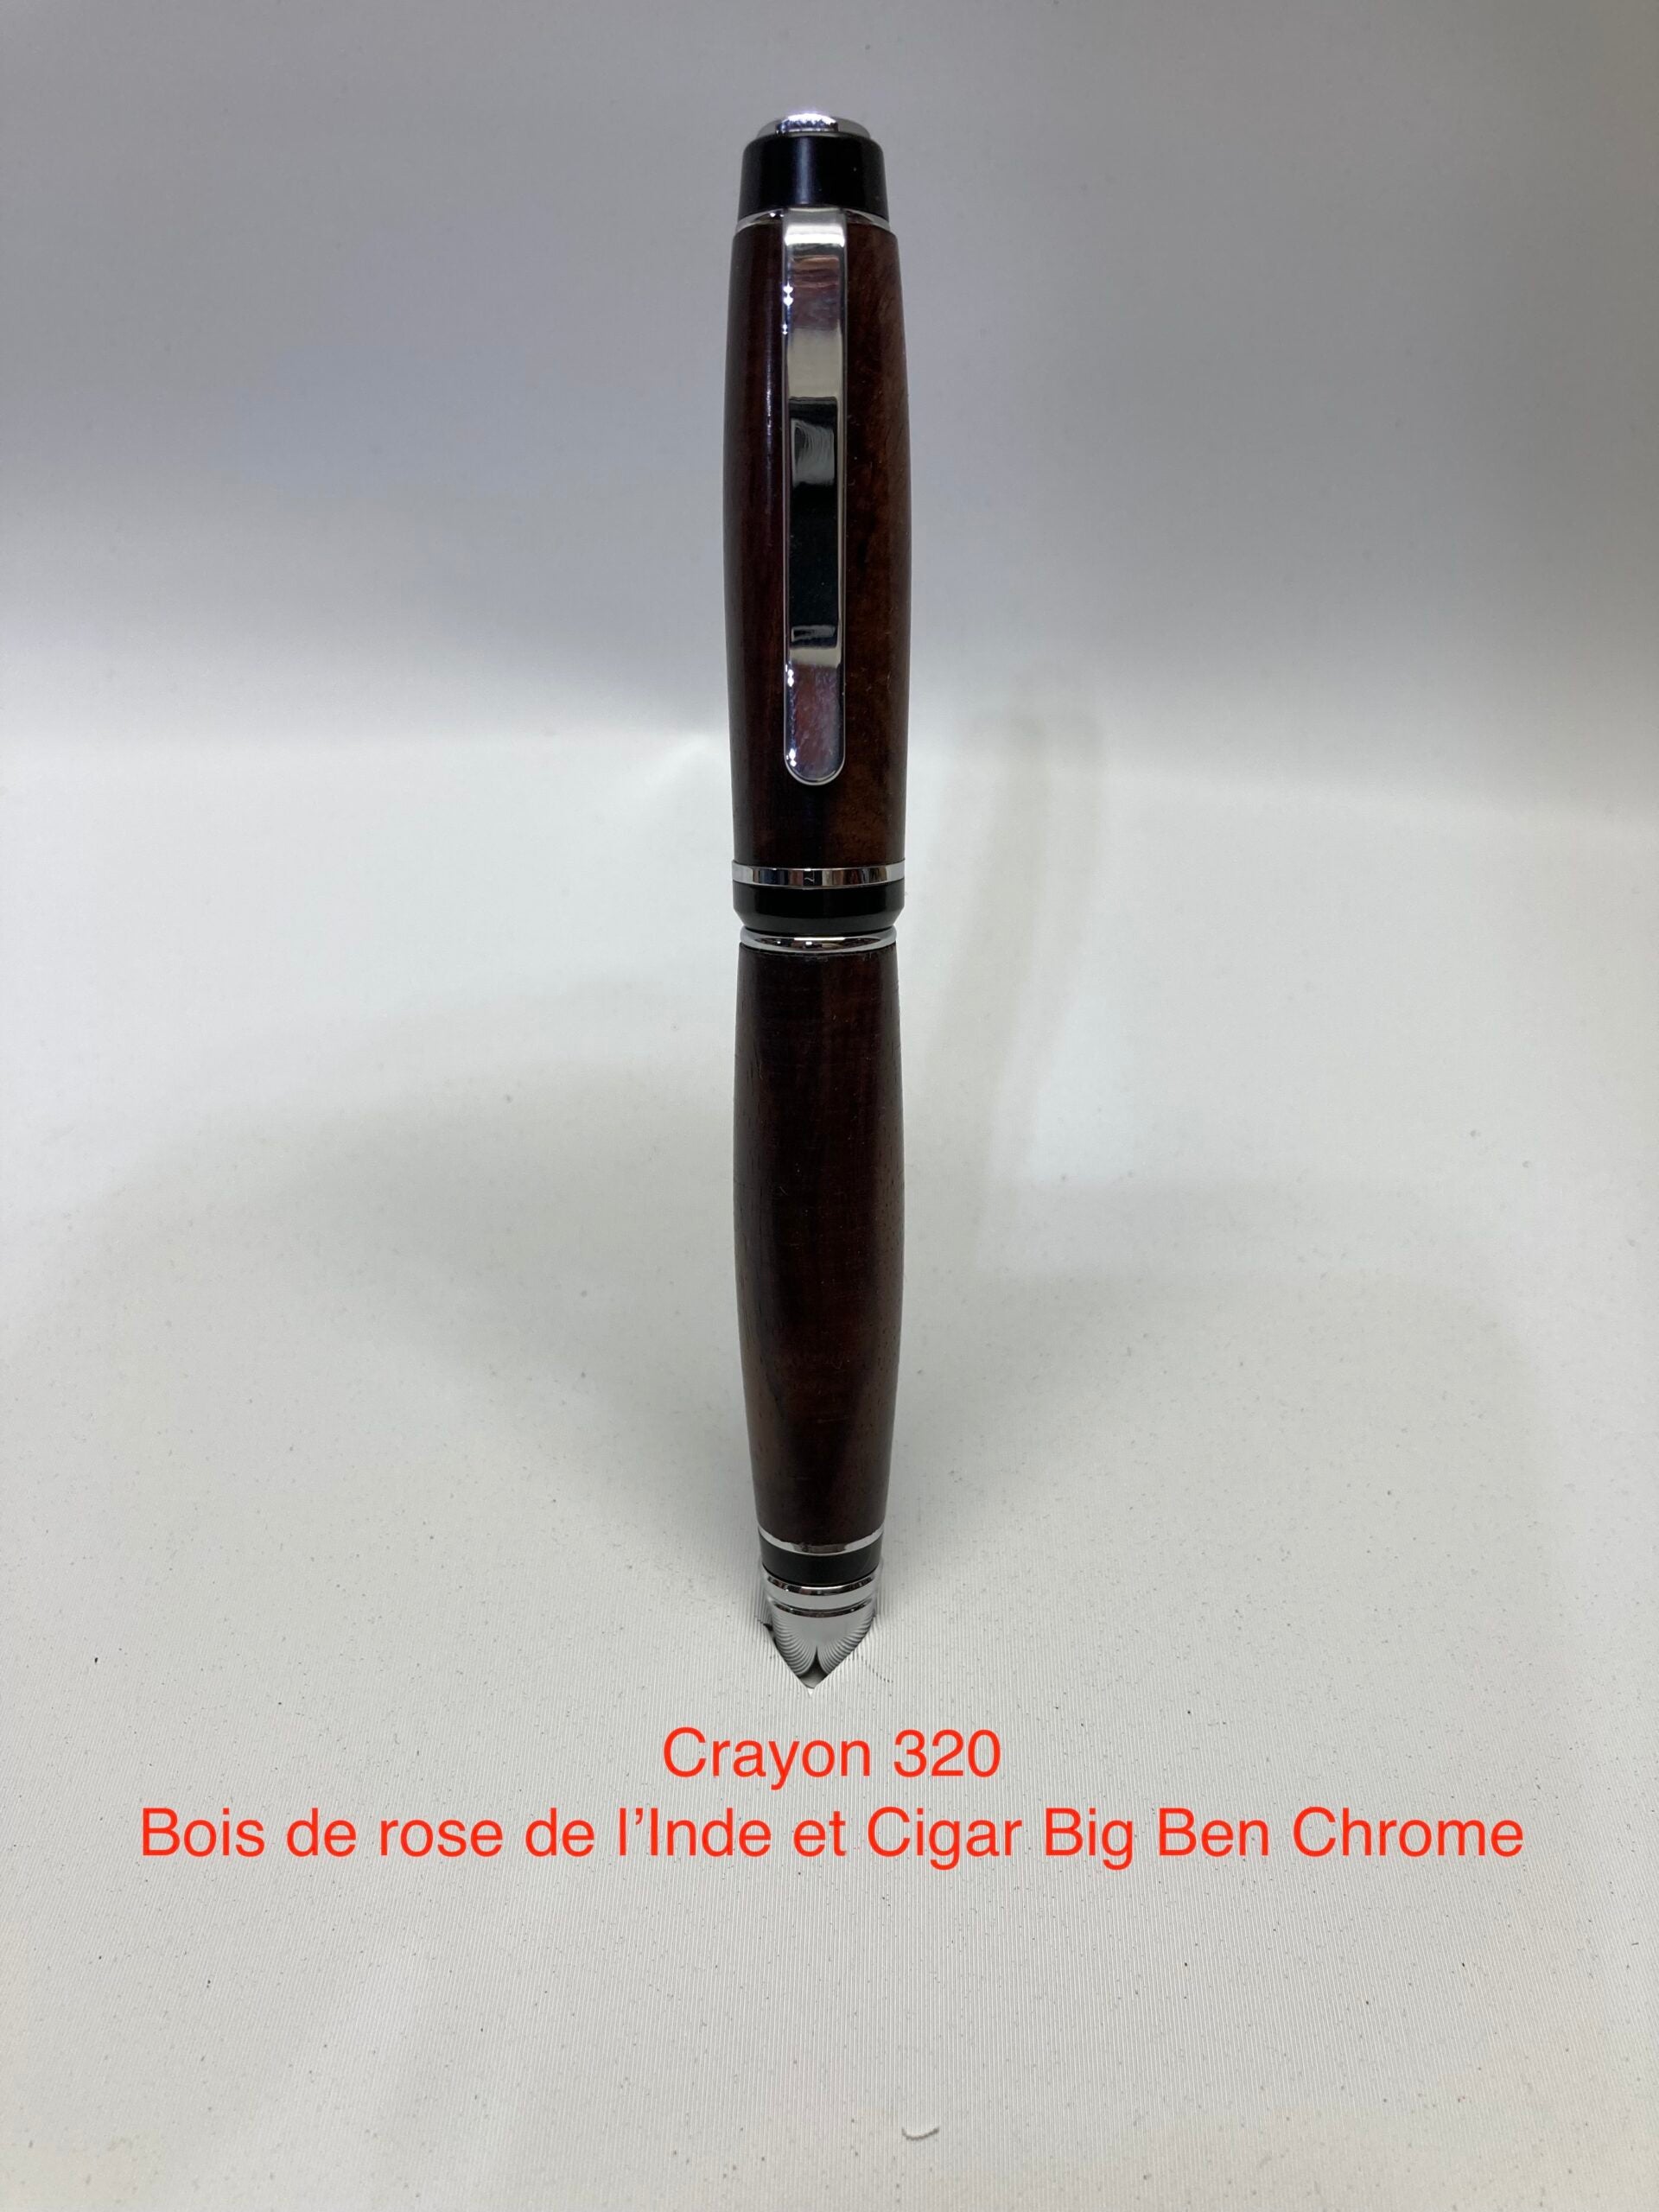 Cigare Big Ben, bois de rose de l'inde et cigar et chrome